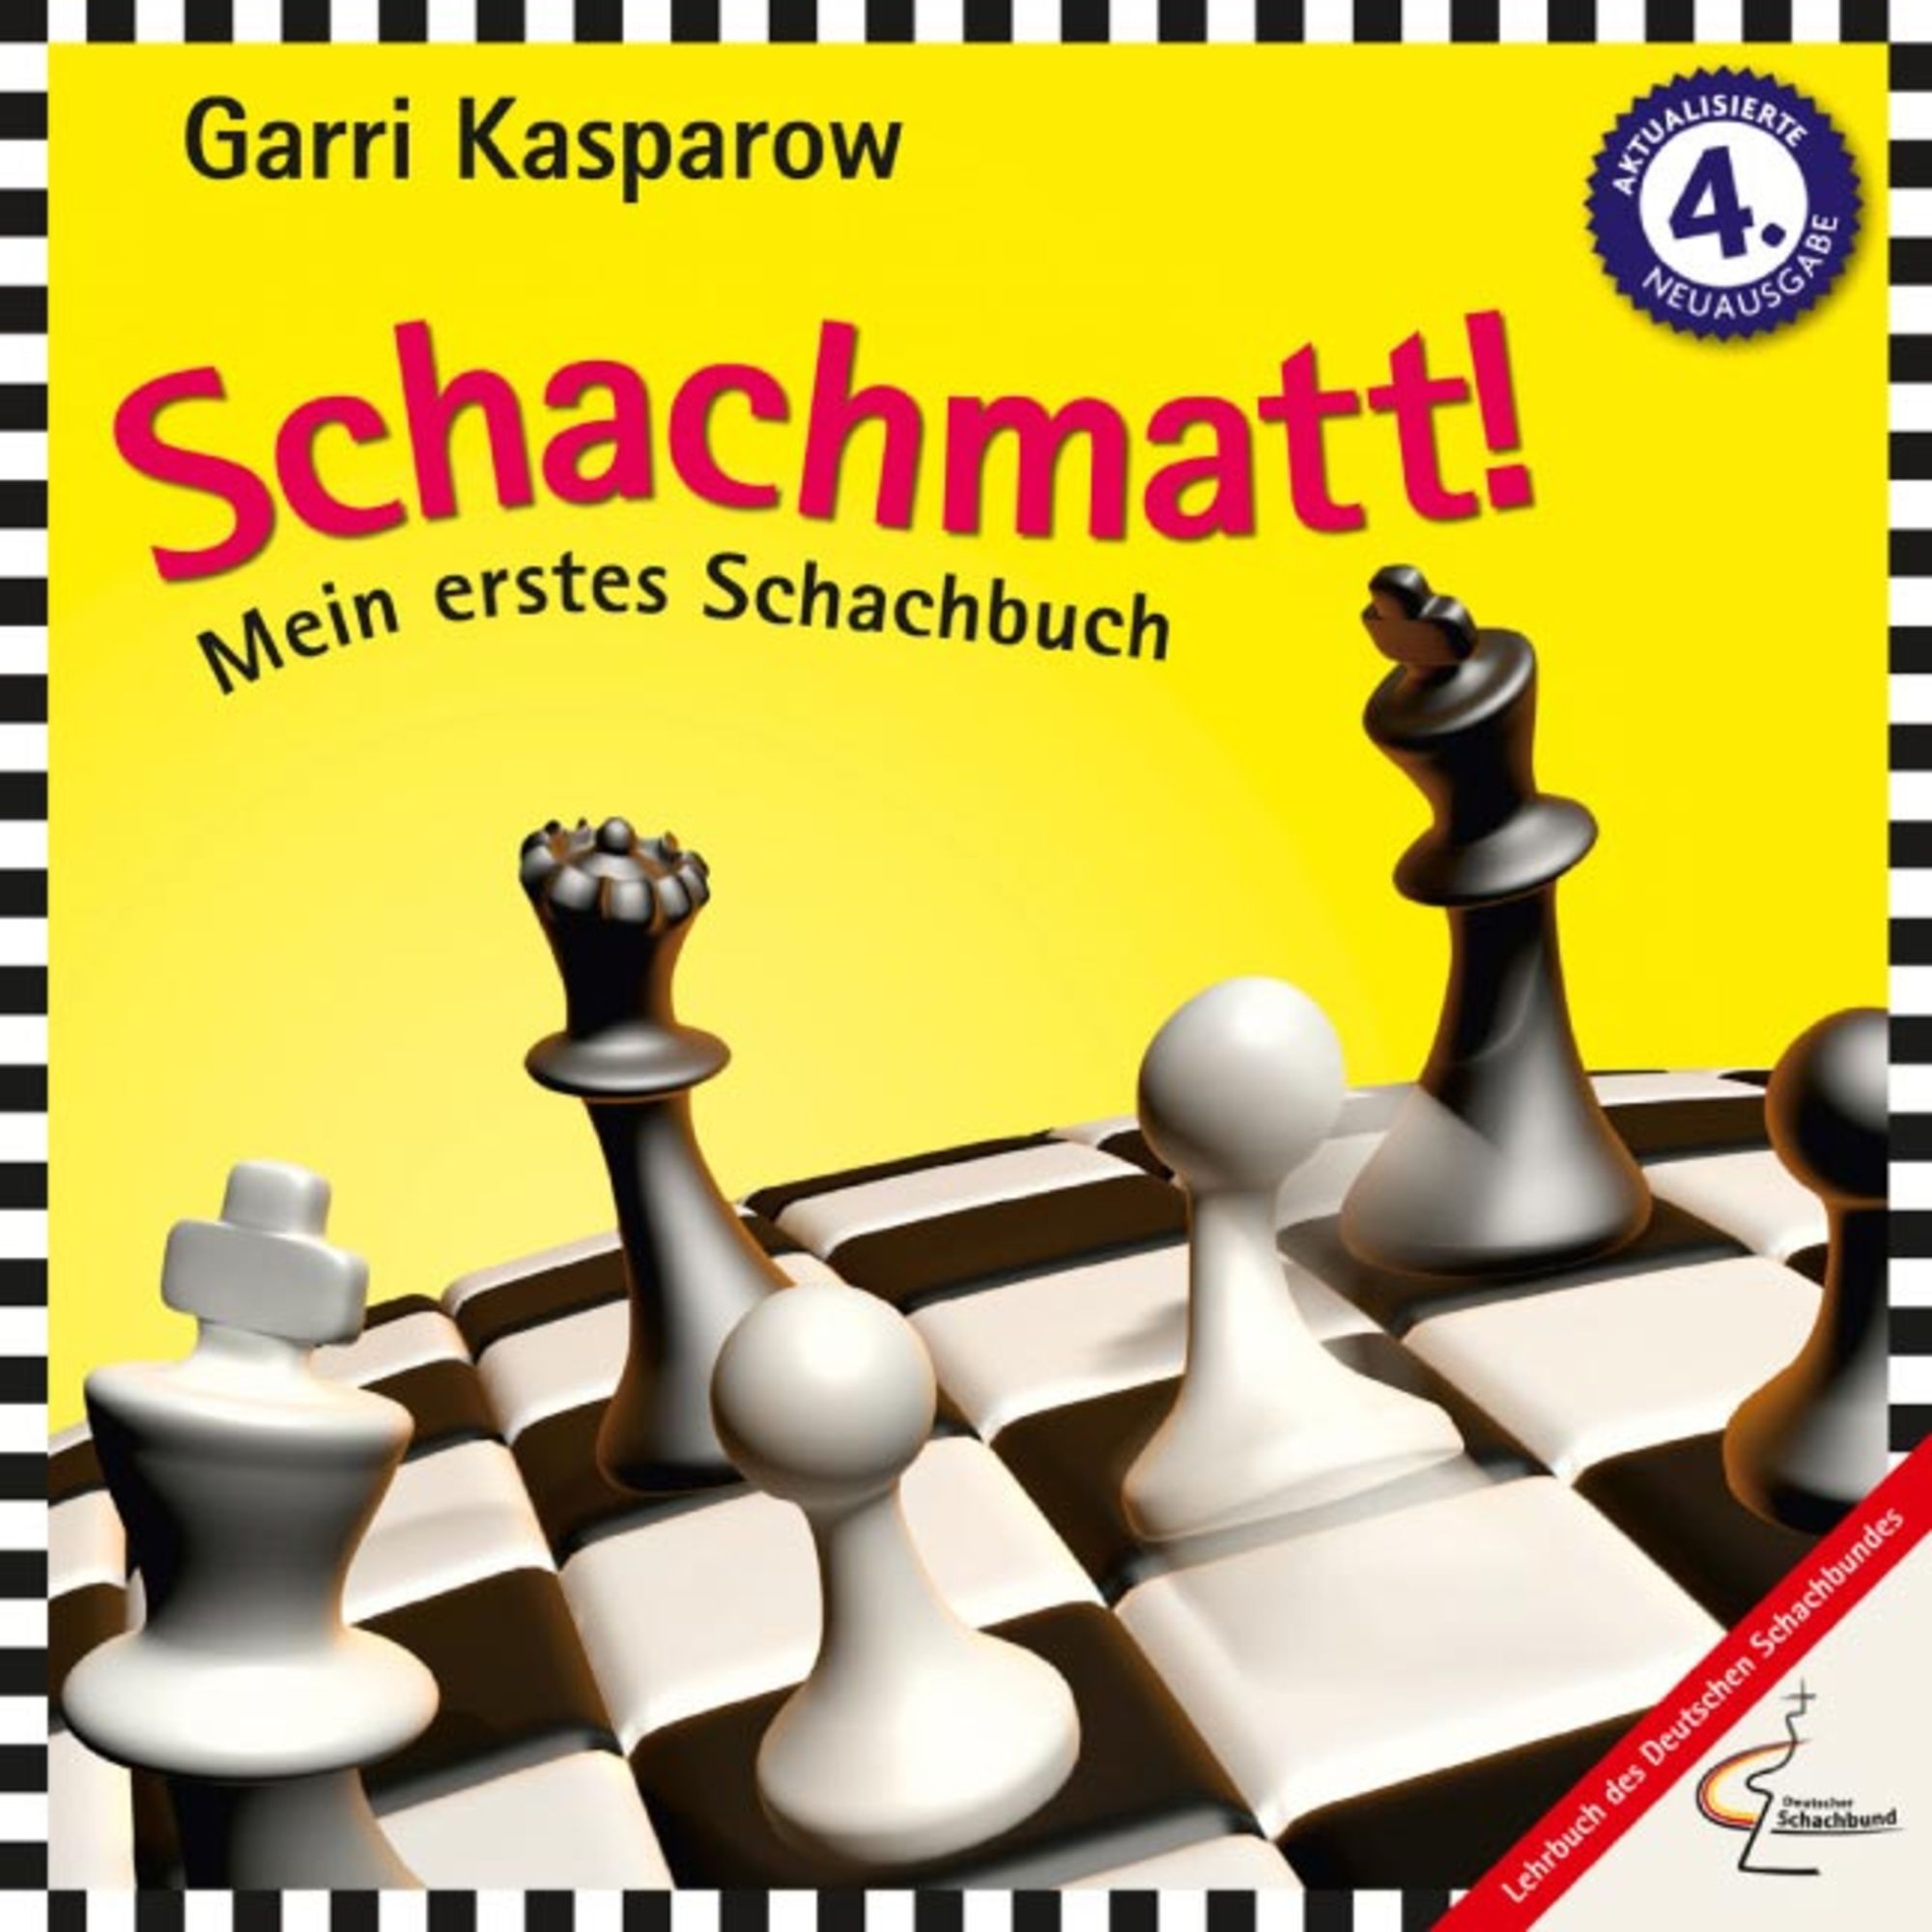 Schachmatt! von Garri Kasparow - Buch